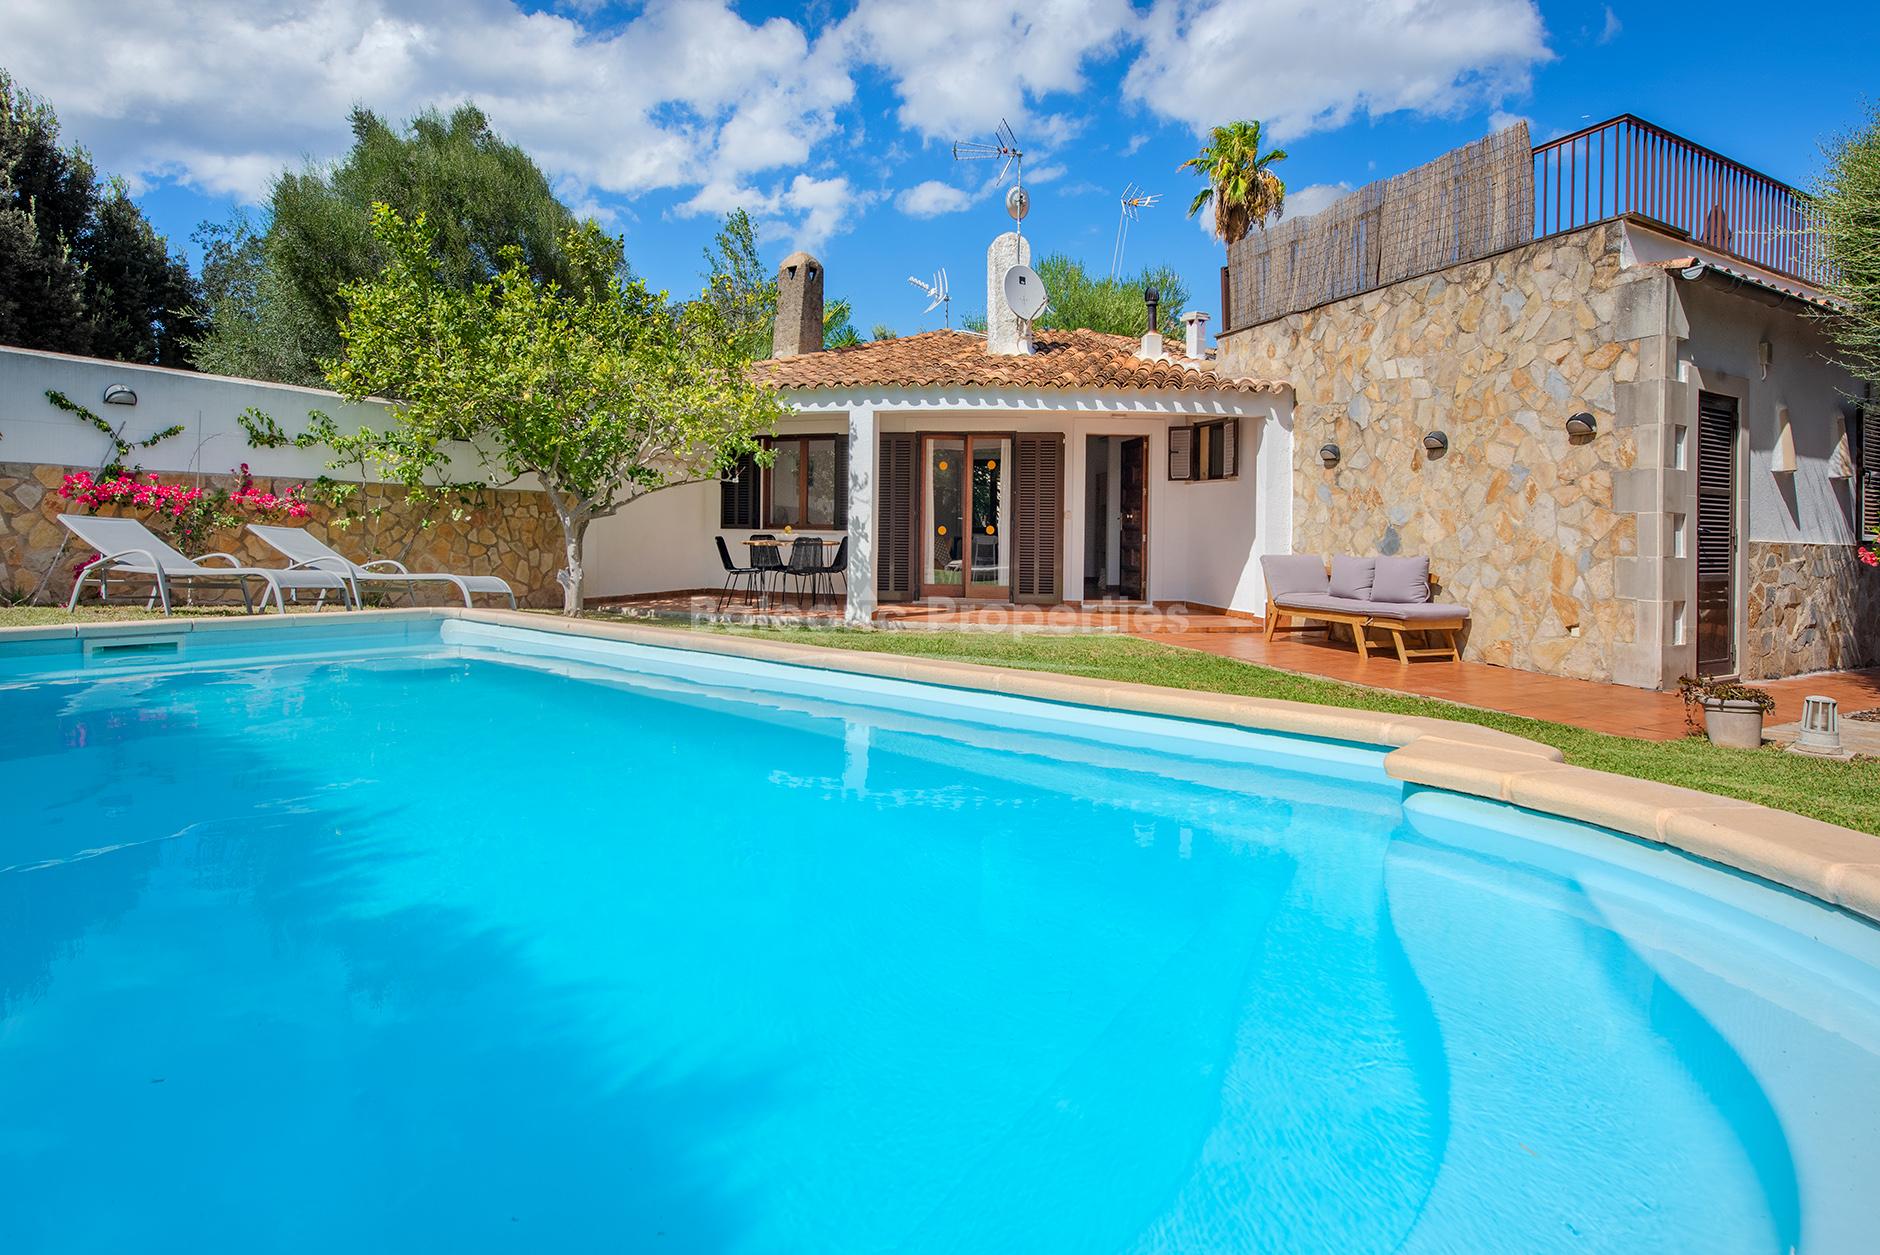 Encantadora casa con licencia de alquiler vacacional en venta cerca de Pollensa, Mallorca